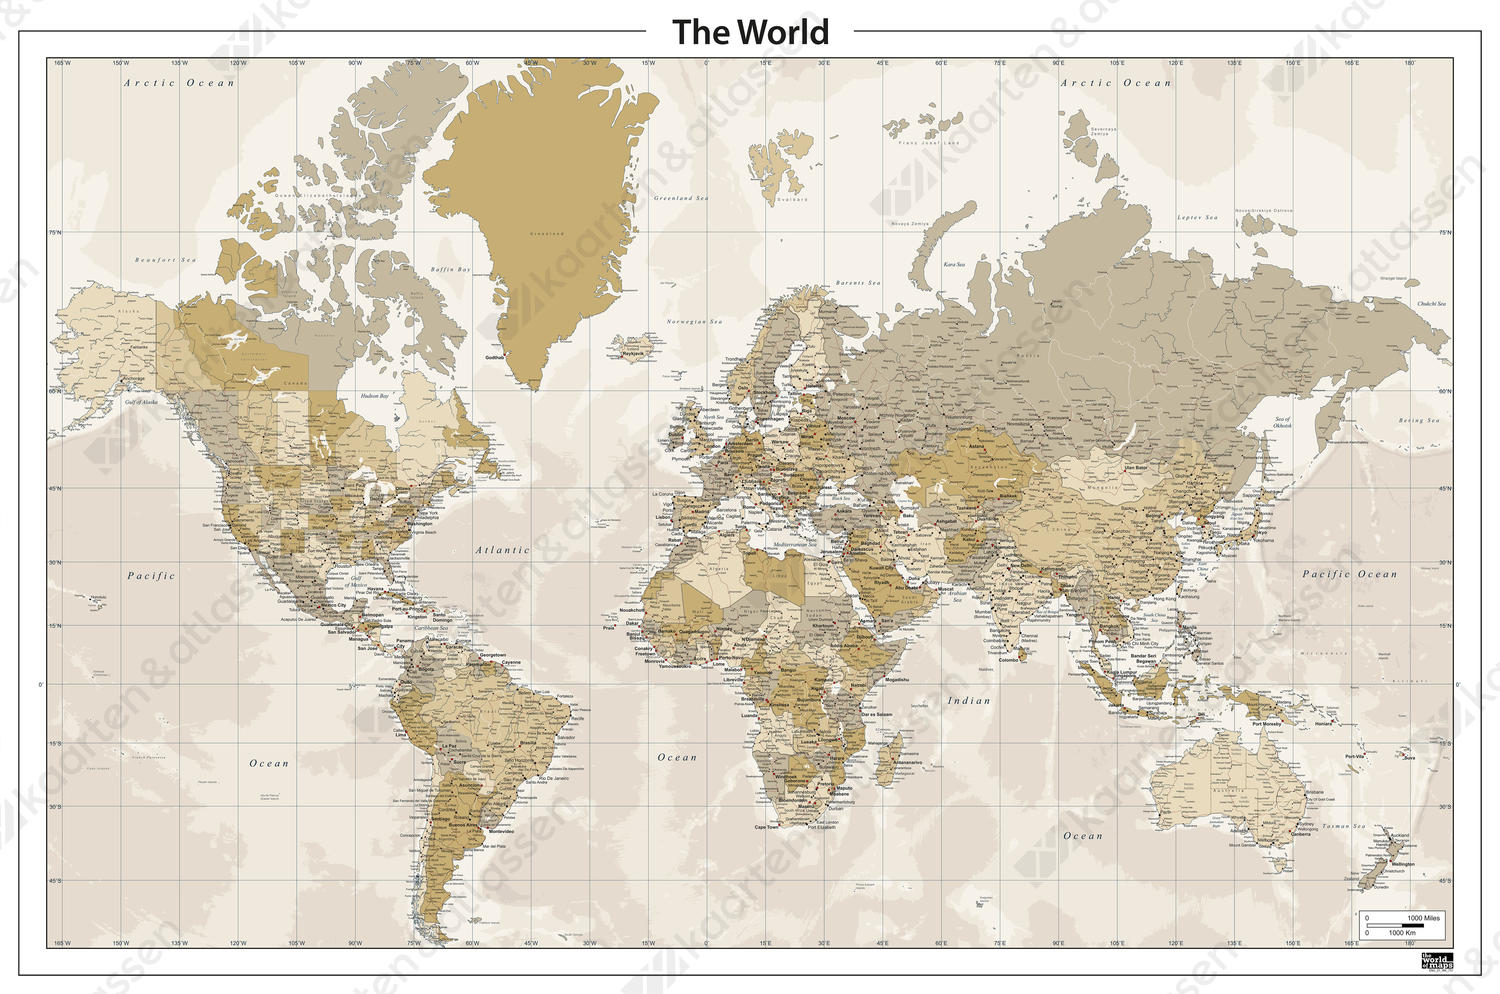 Staatkundige digitale wereldkaart in nostalgische kleuren